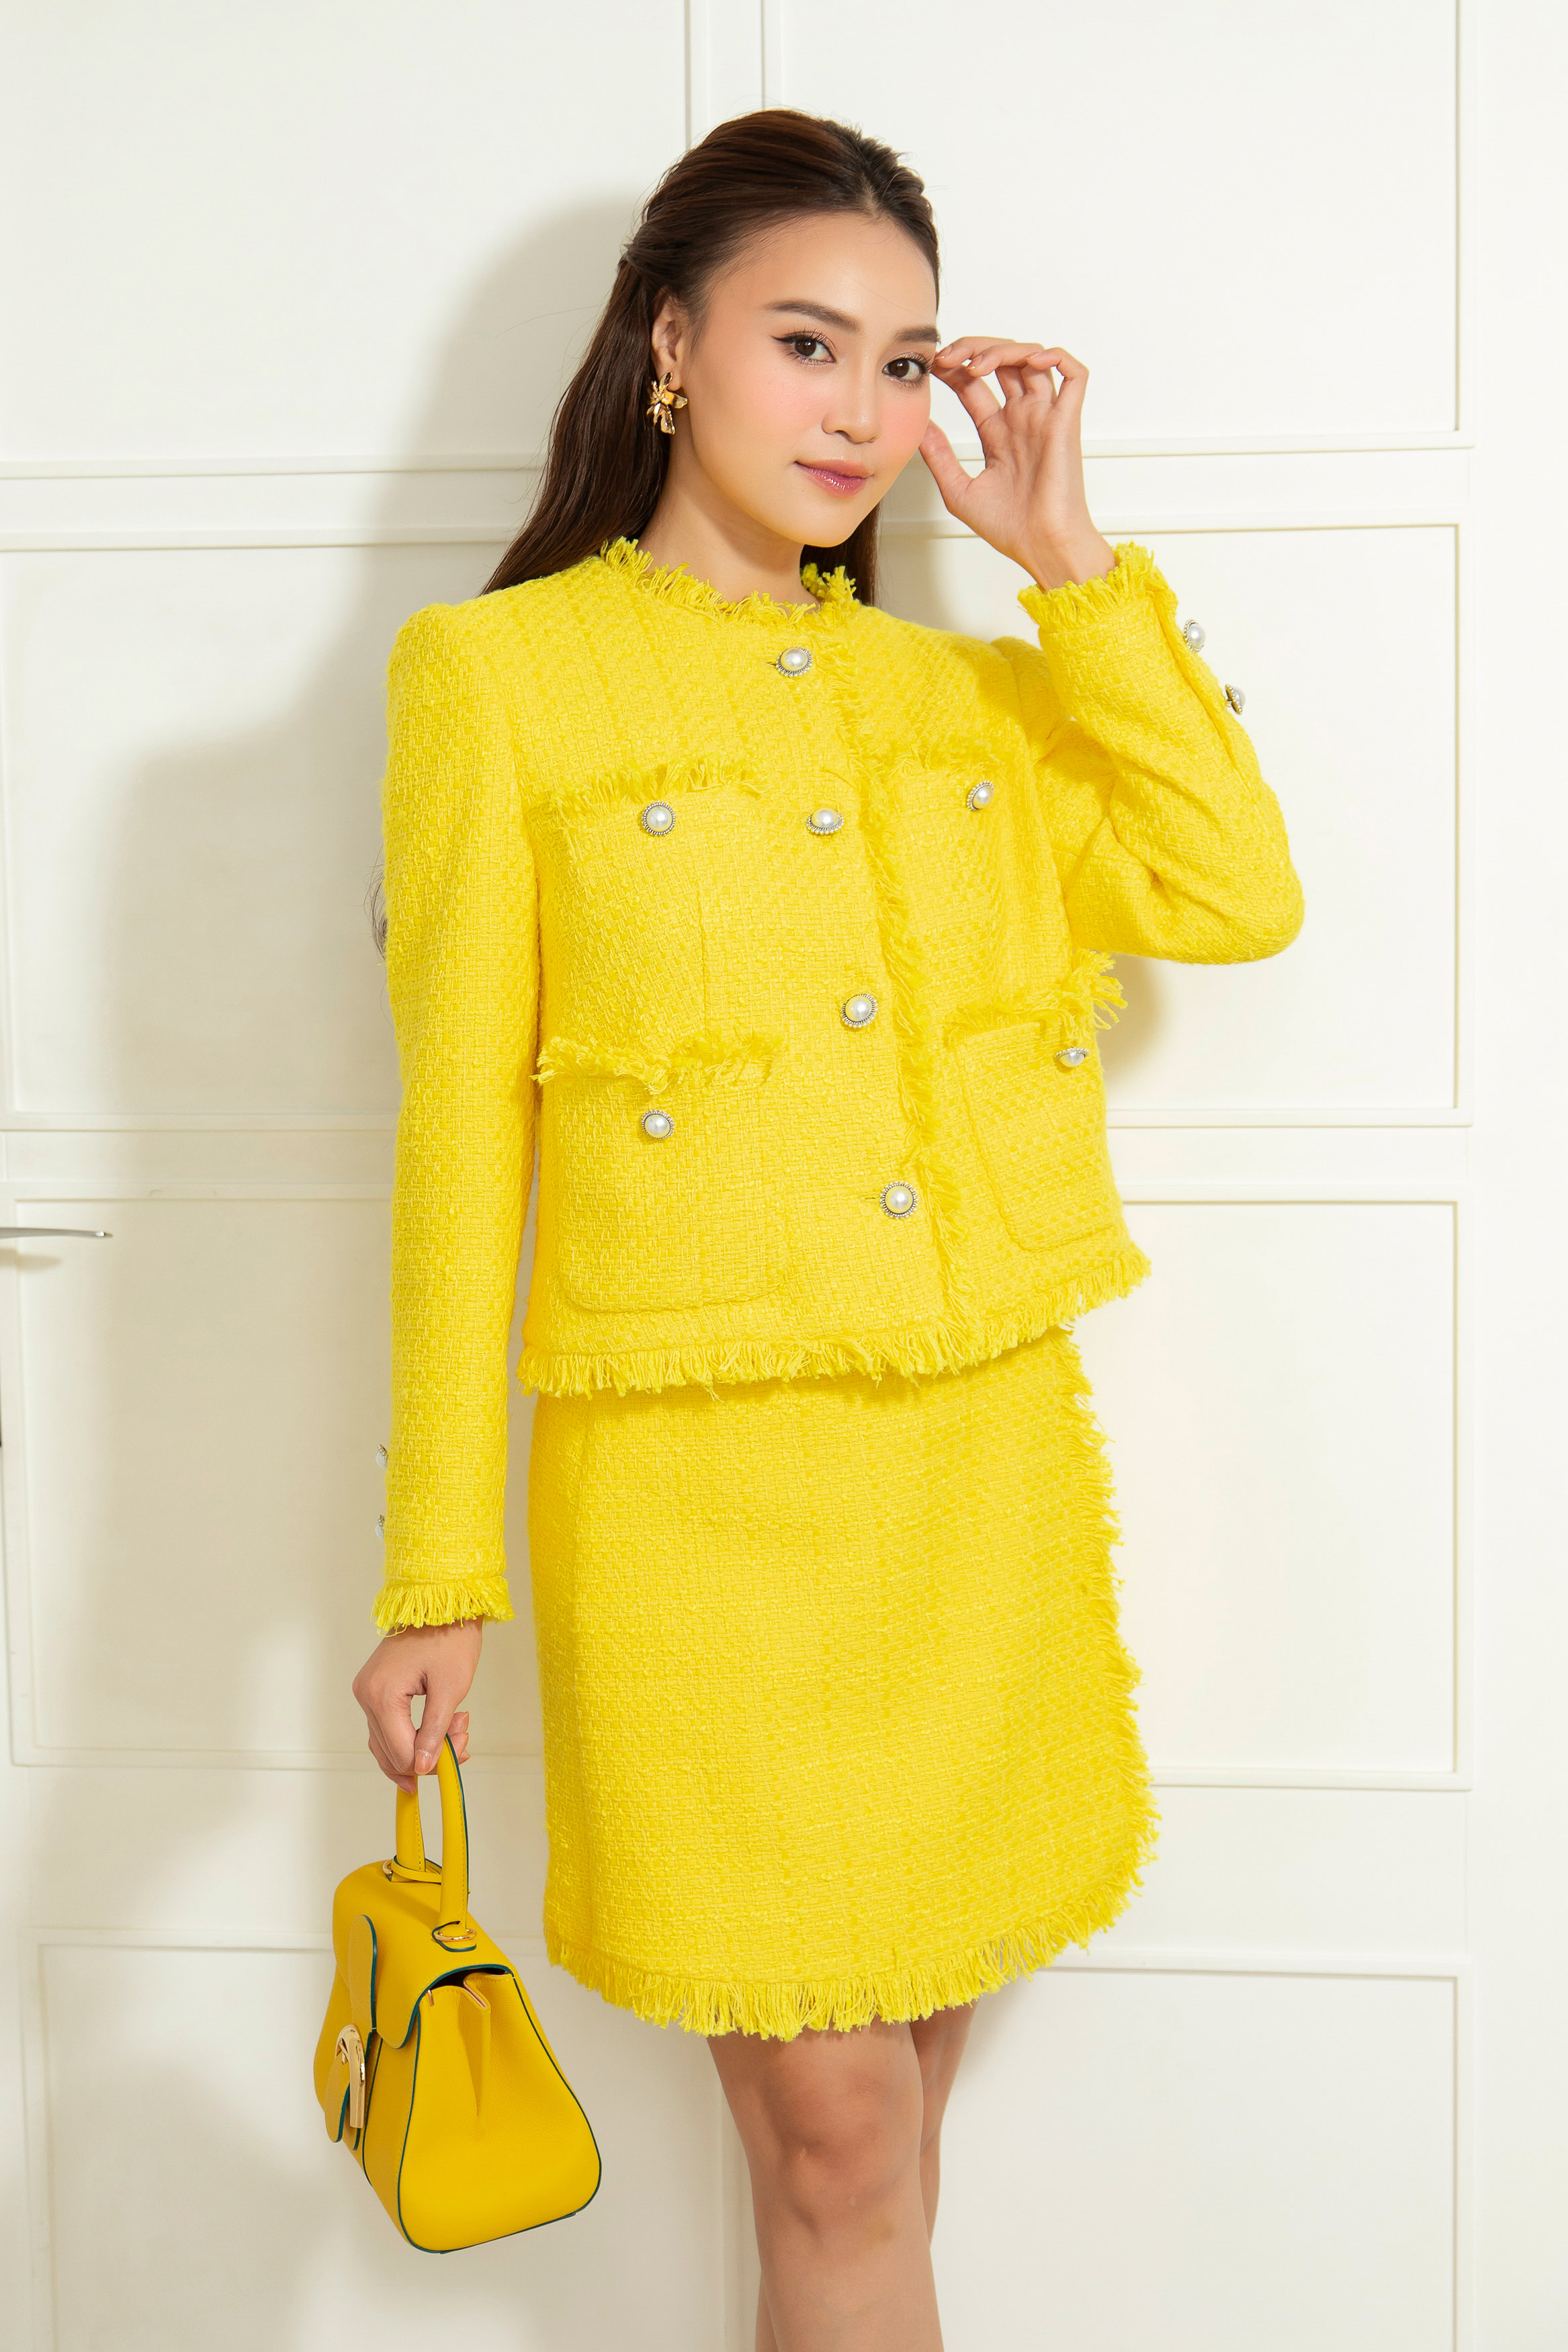 chanel yellow tweed jacket